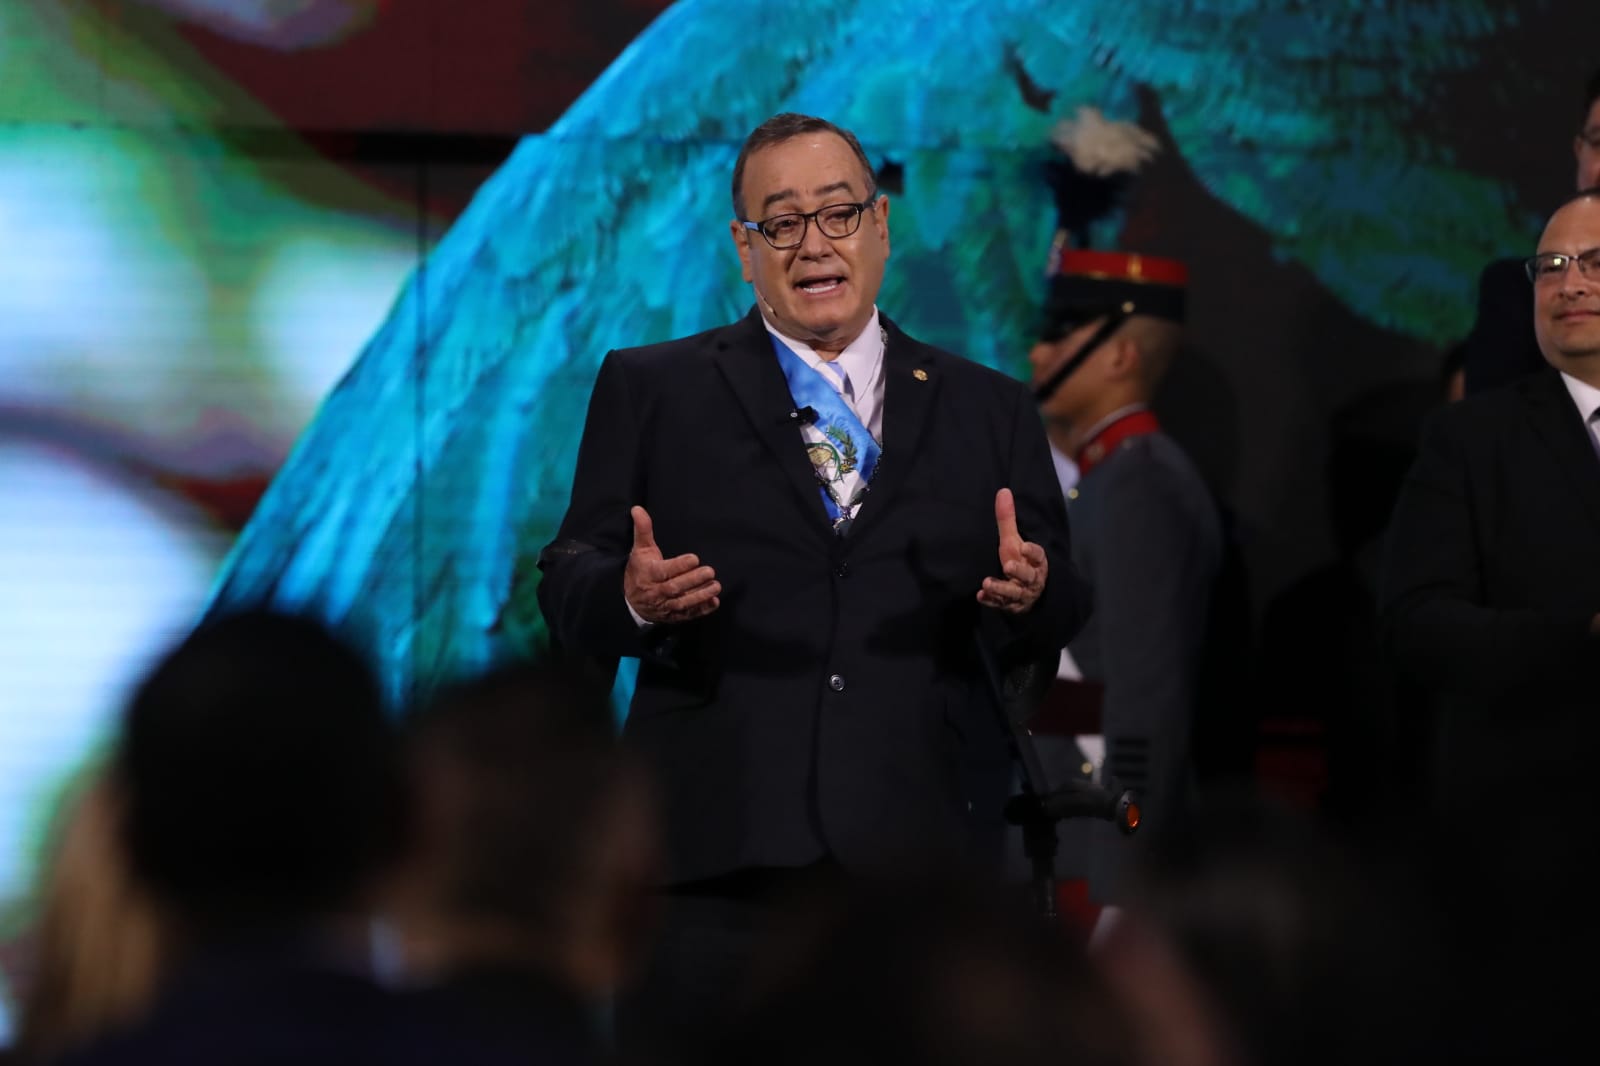 El presidente guatemalteco, Alejandro Giammattei, se dirige a los asistentes a la presentación de su informe de tercer año de gobierno, acto que se desarrolló en el Palacio Nacional de la Cultura. (Foto Prensa Libre: Elmer Vargas)